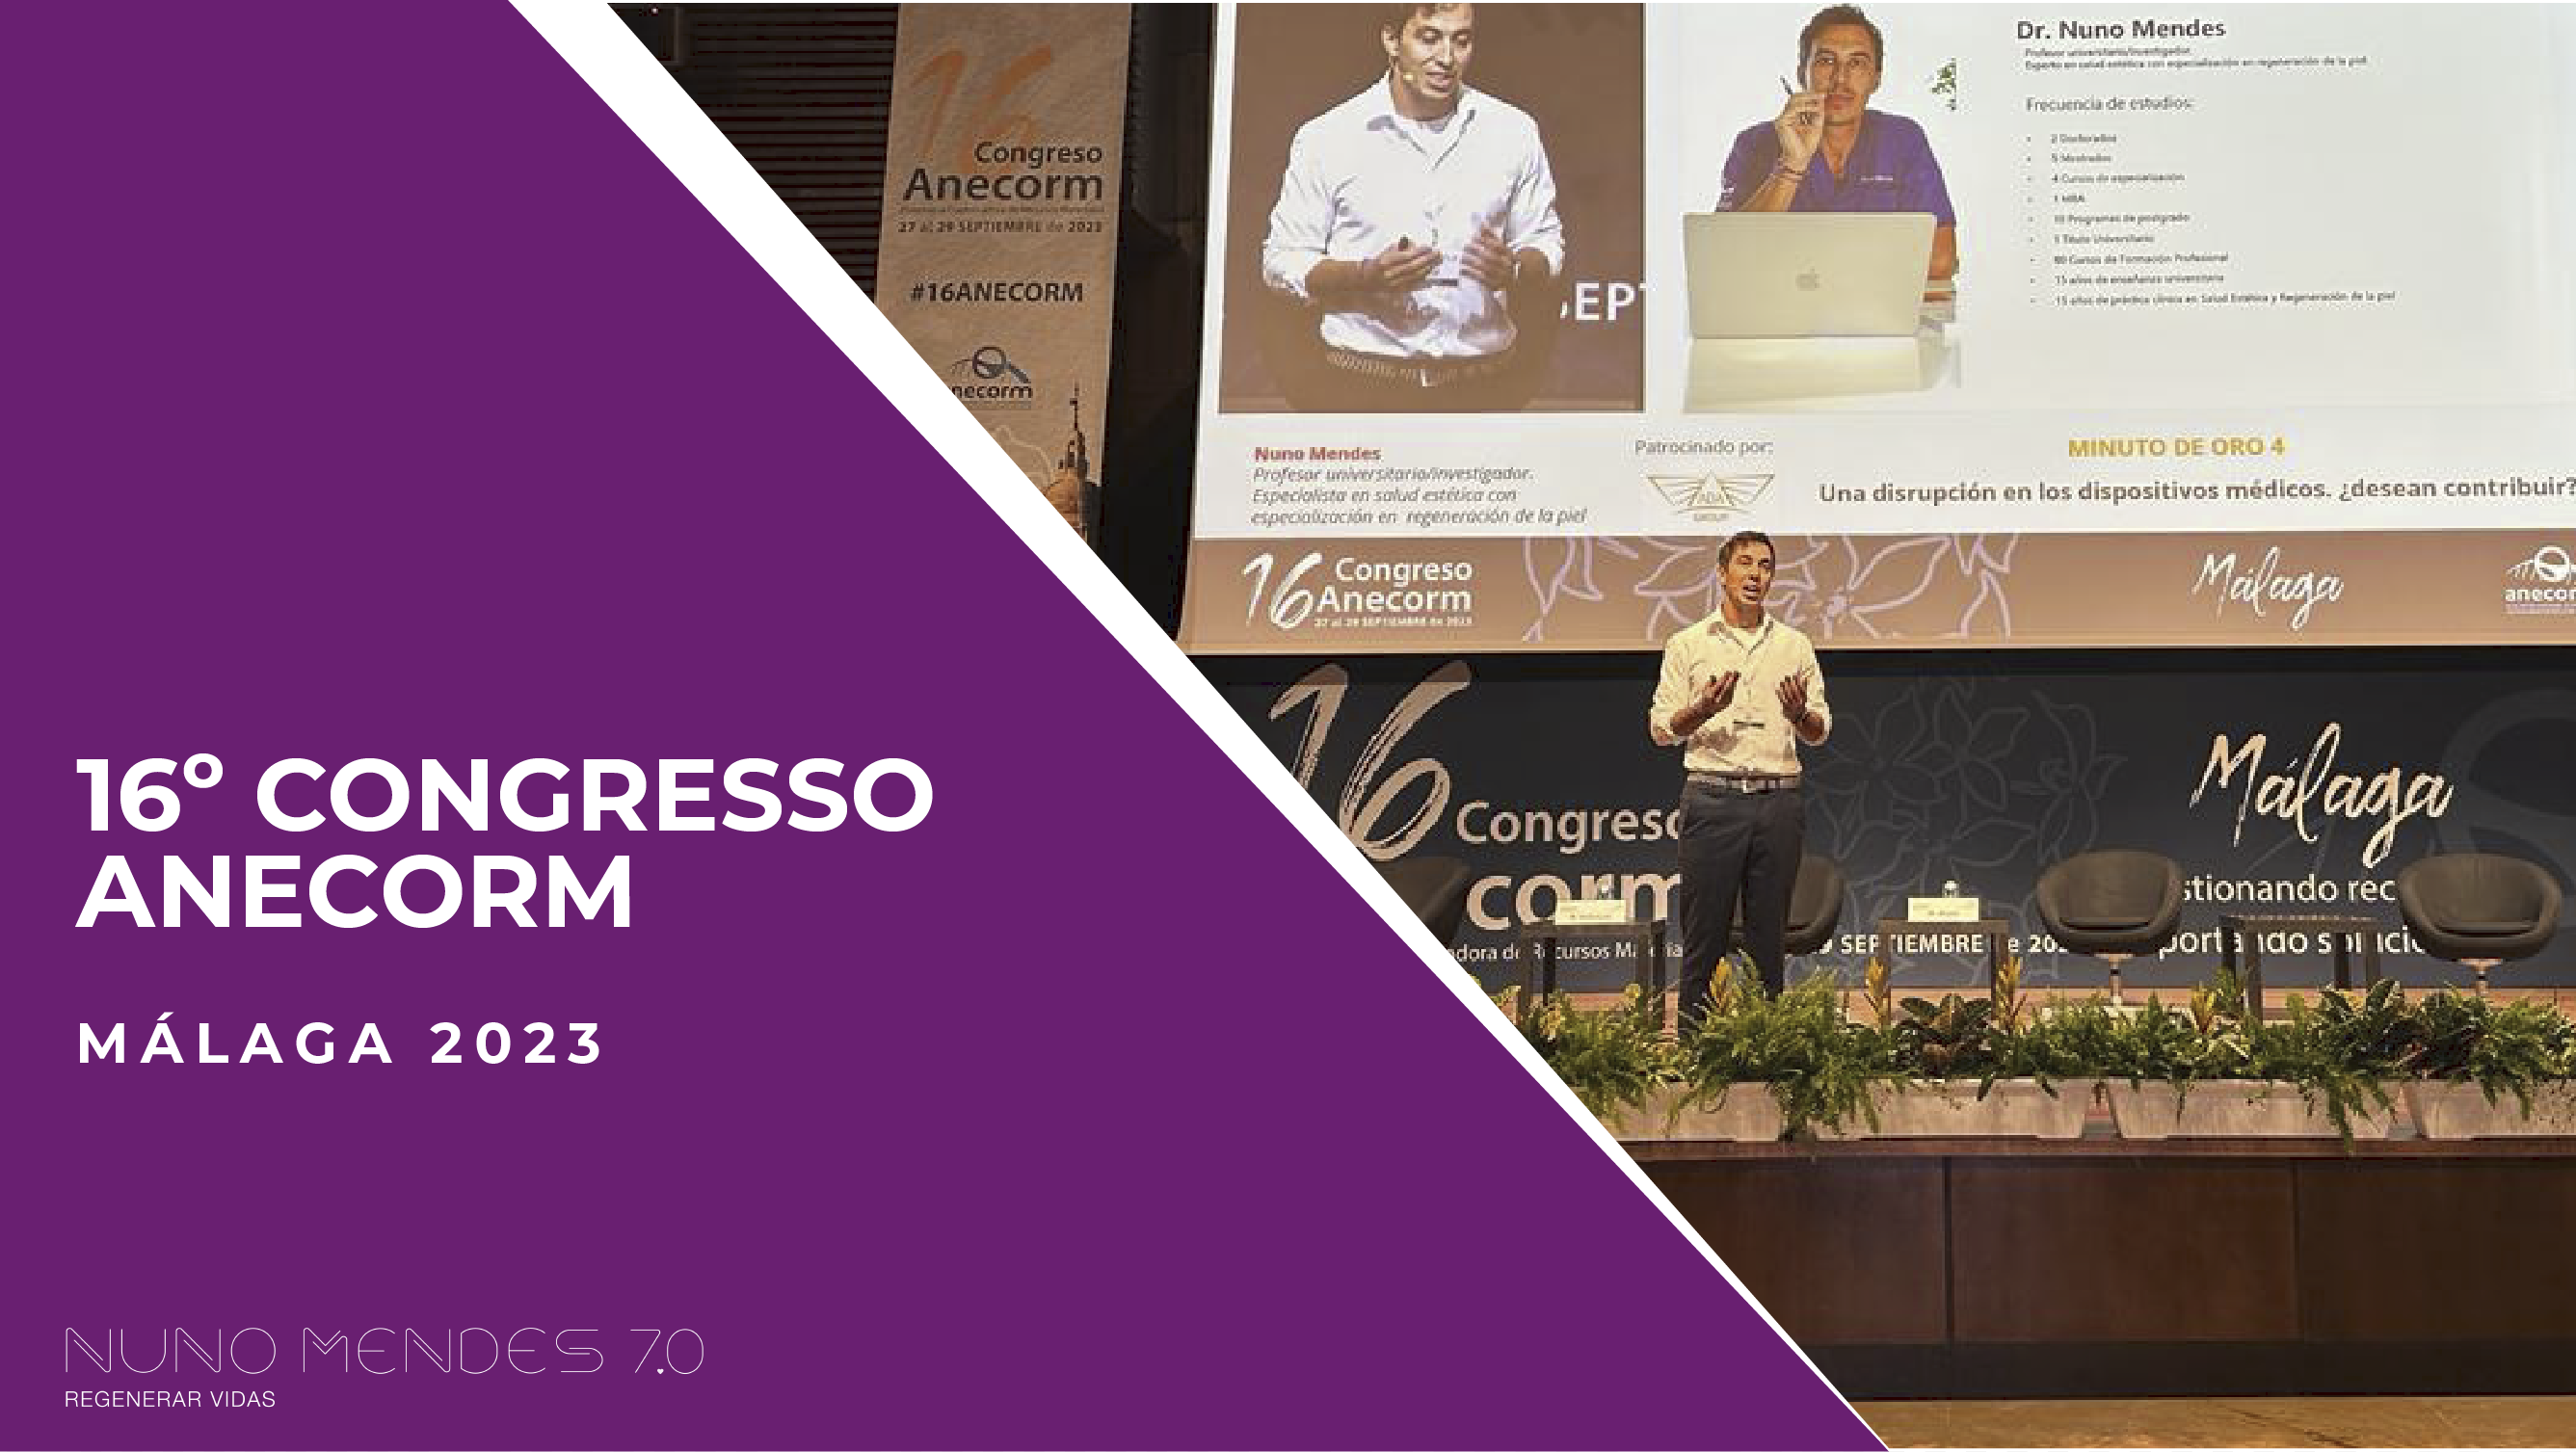 16º Congresso Anecorm - Málaga 2023